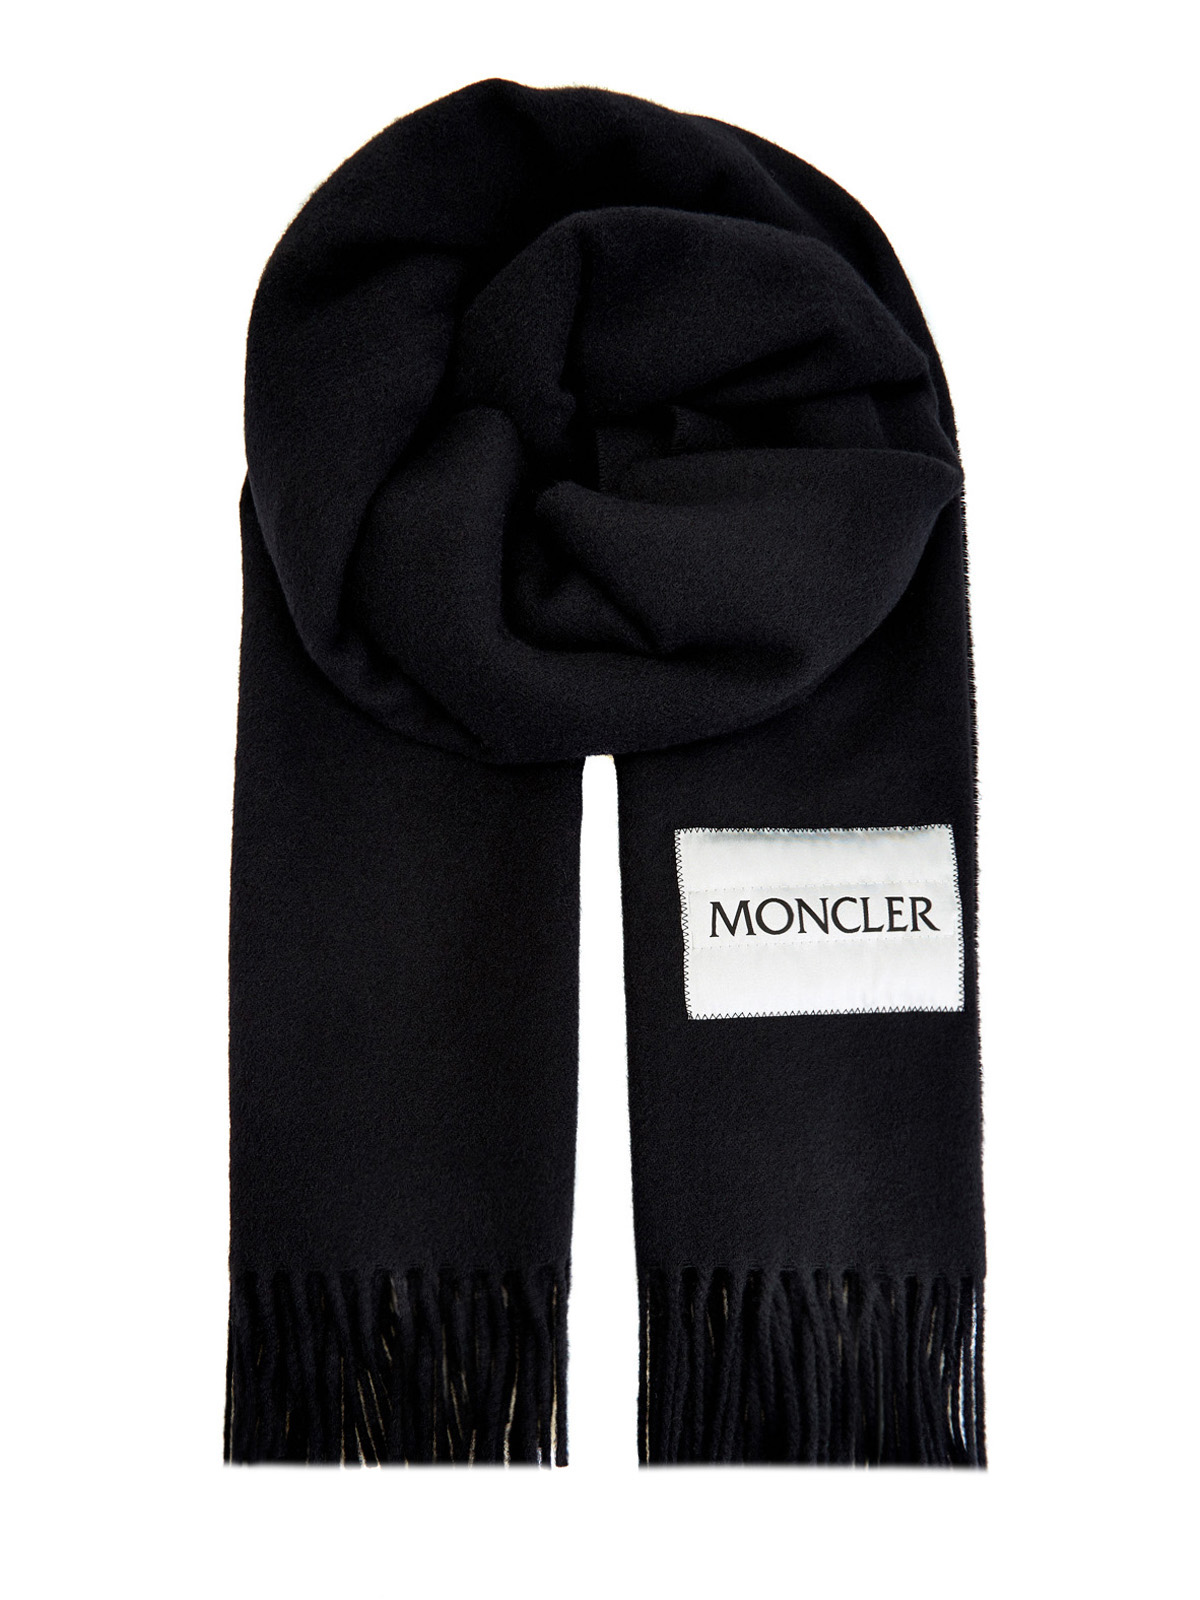 Однотонный шарф с эмблемой в технике жаккард MONCLER, цвет черный, размер 36;36.5;37.5;38;38.5;39;40